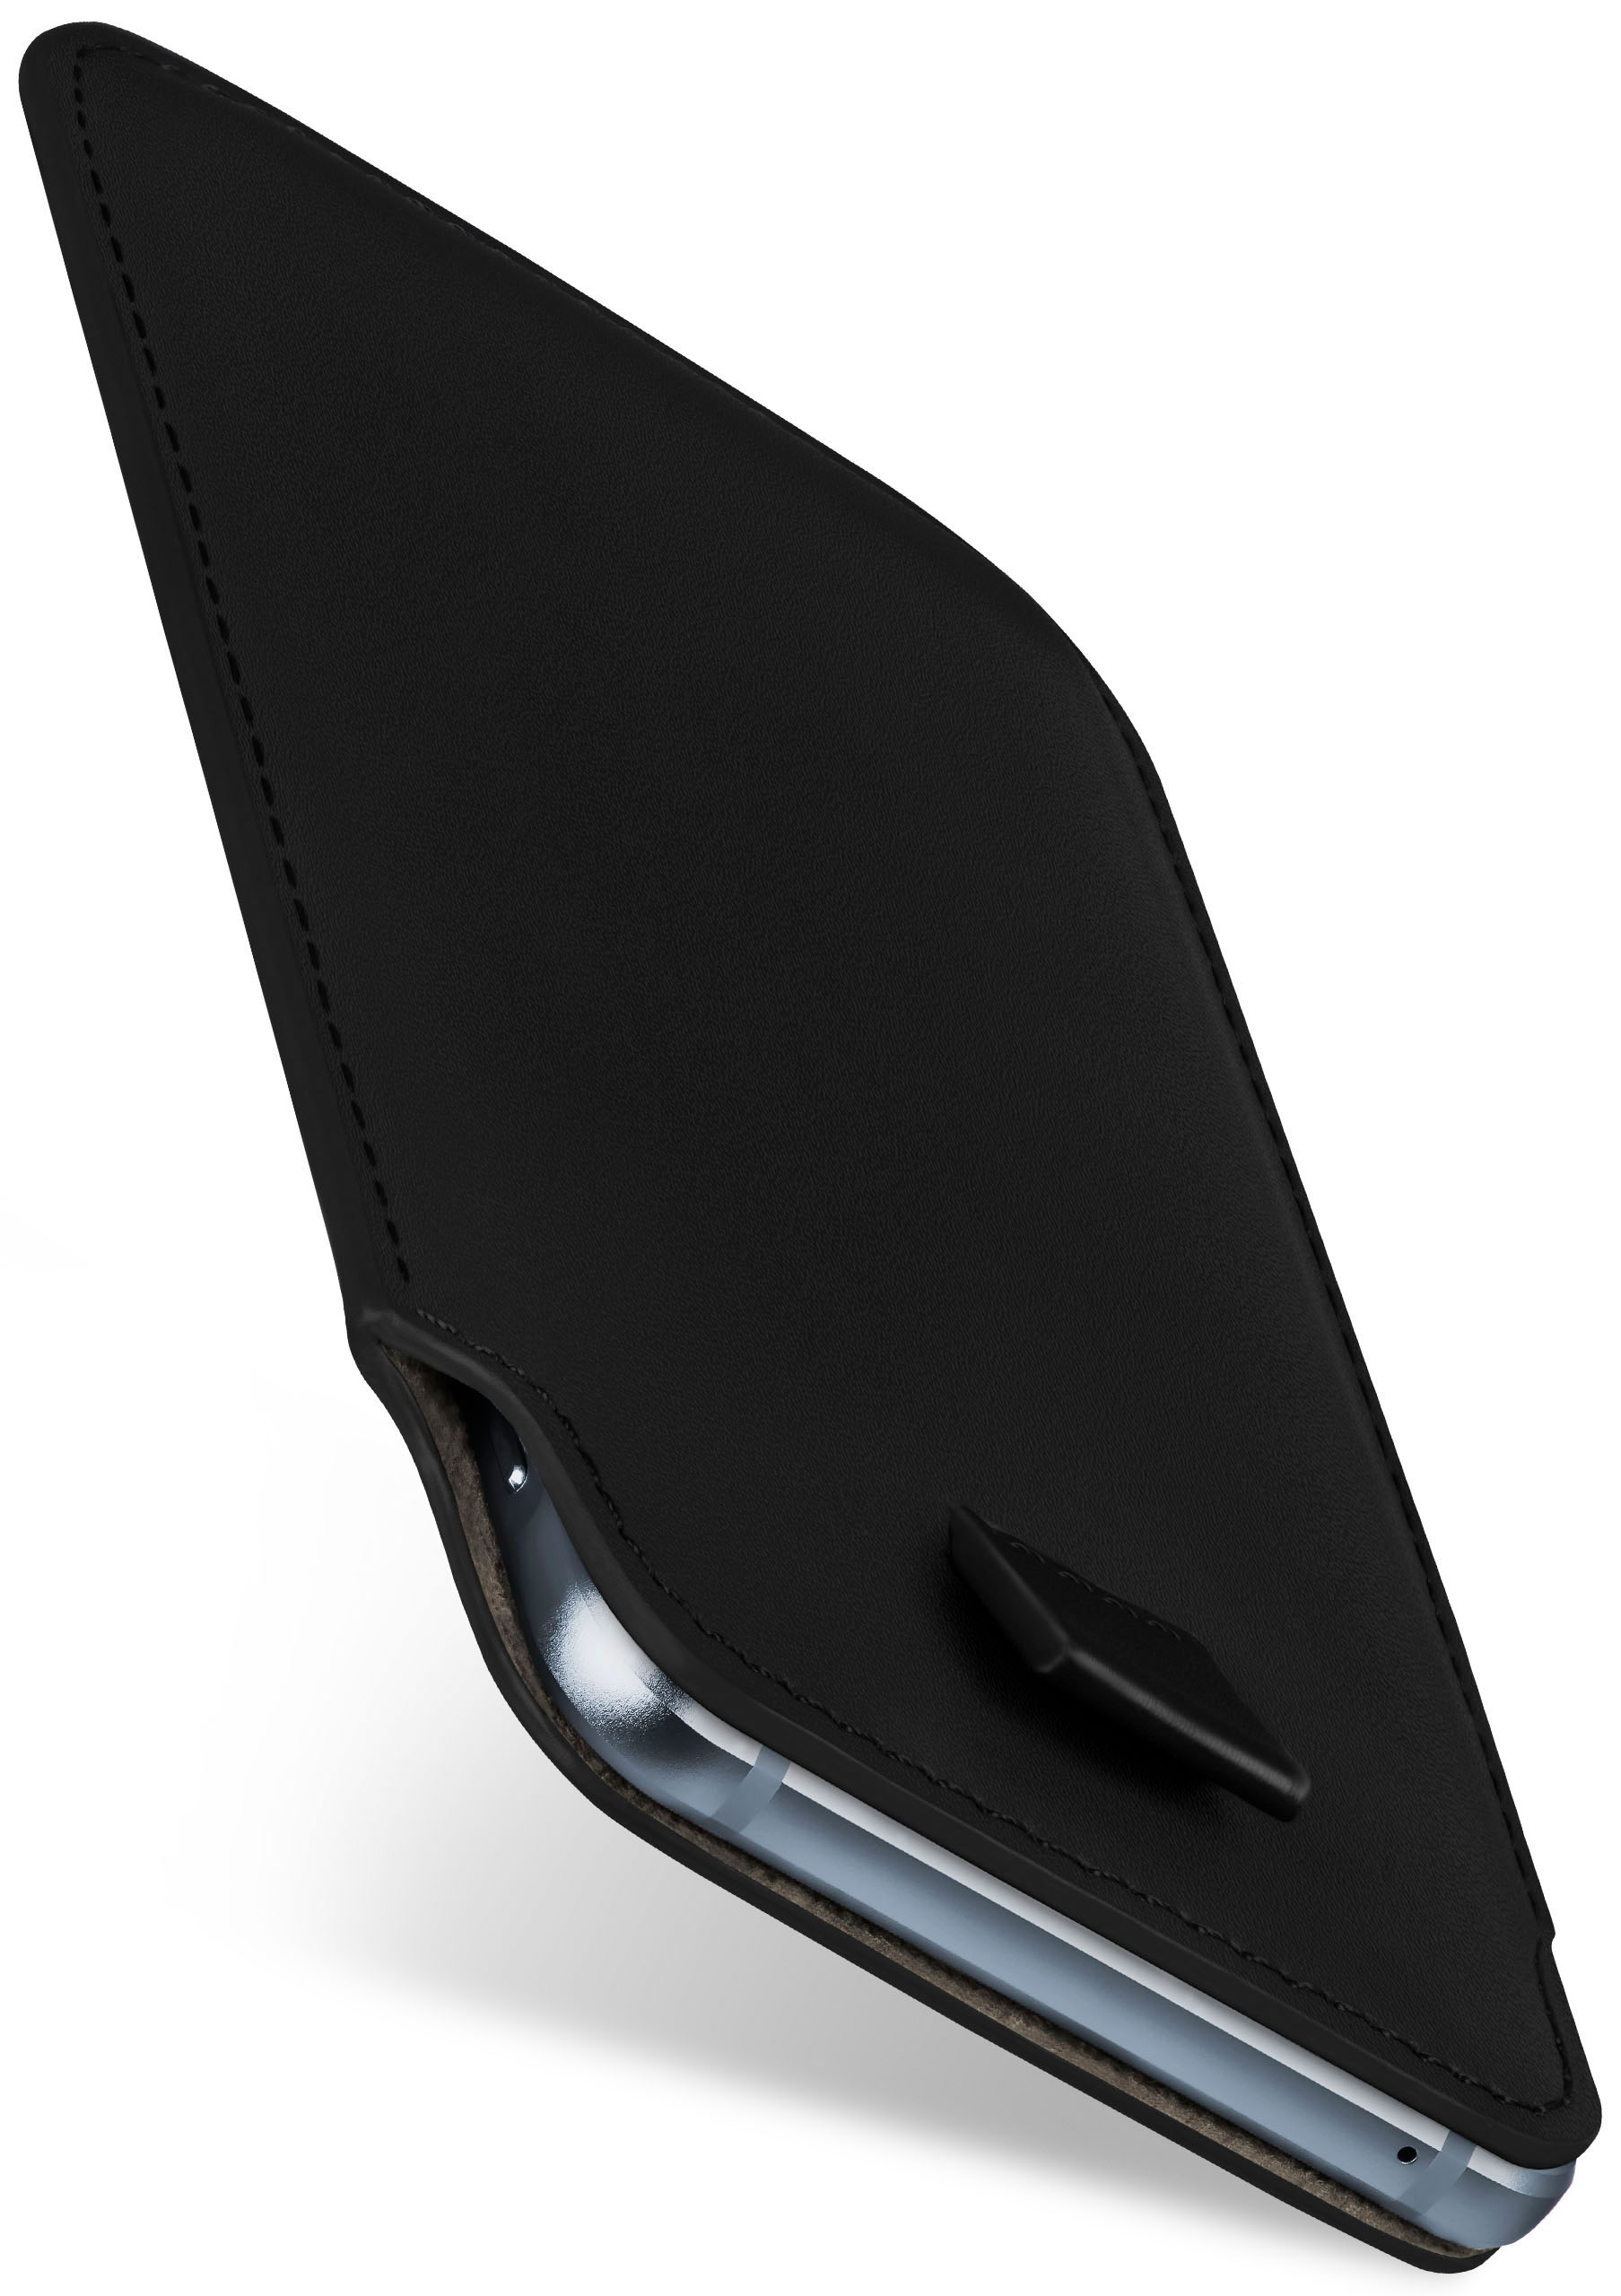 Slide Deep-Black MOEX K40, LG, Full Case, Cover,